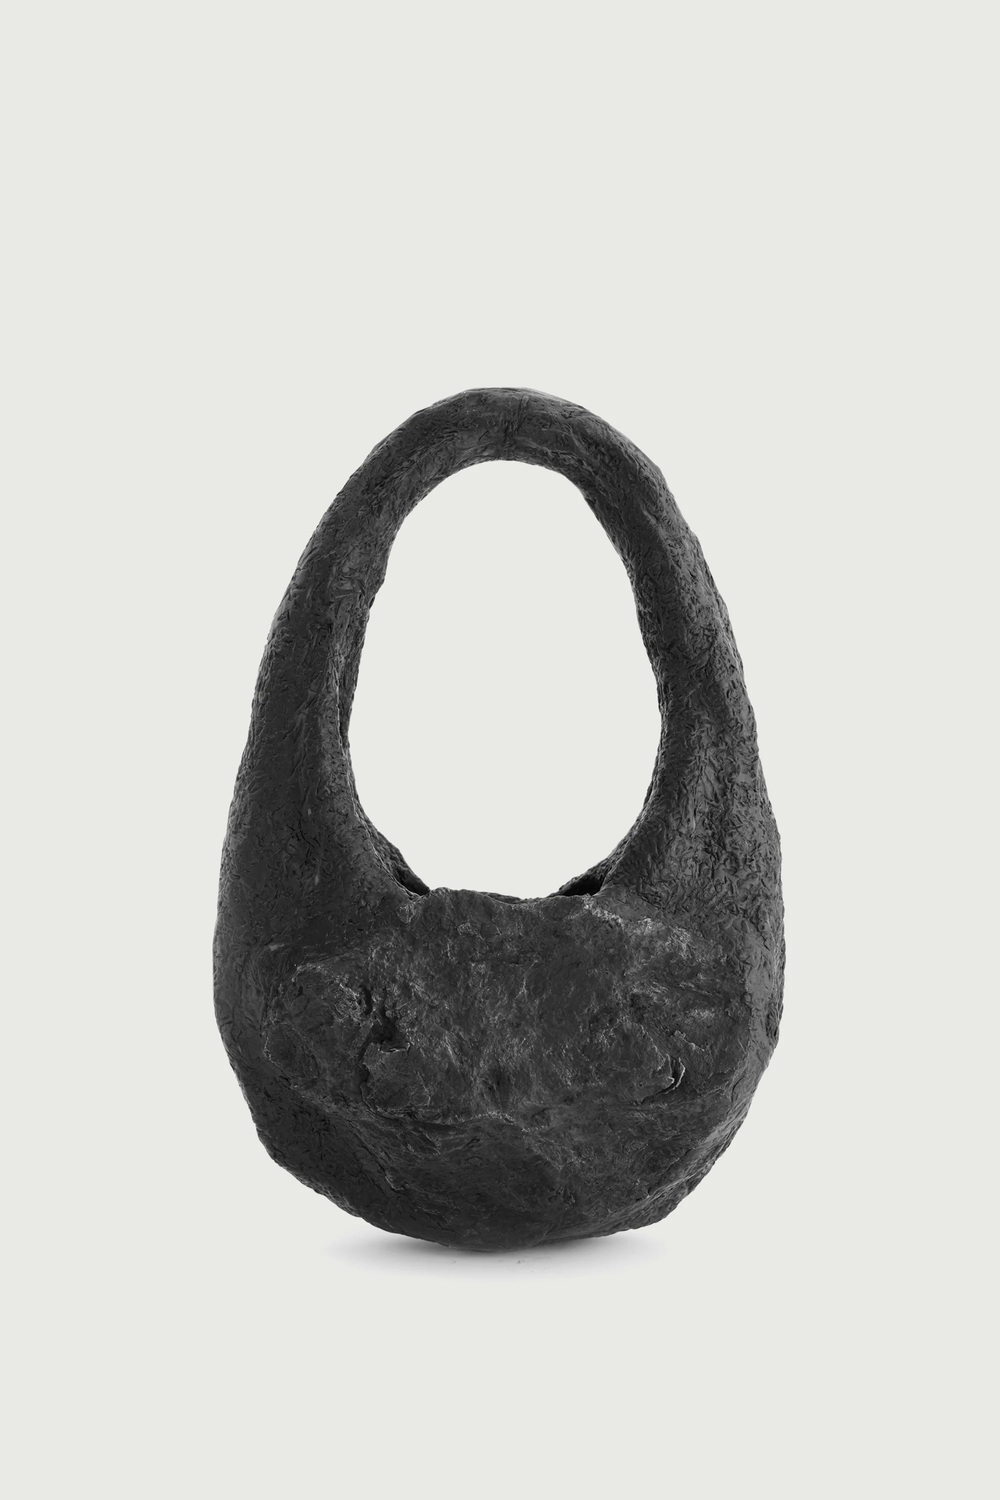 Chiếc túi xách đen sì phiên bản độc nhất vô nhị trên thế giới: Chạm khắc thủ công, có giá cả tỷ bạc nhưng mua về chỉ để trưng bày - Ảnh 1.